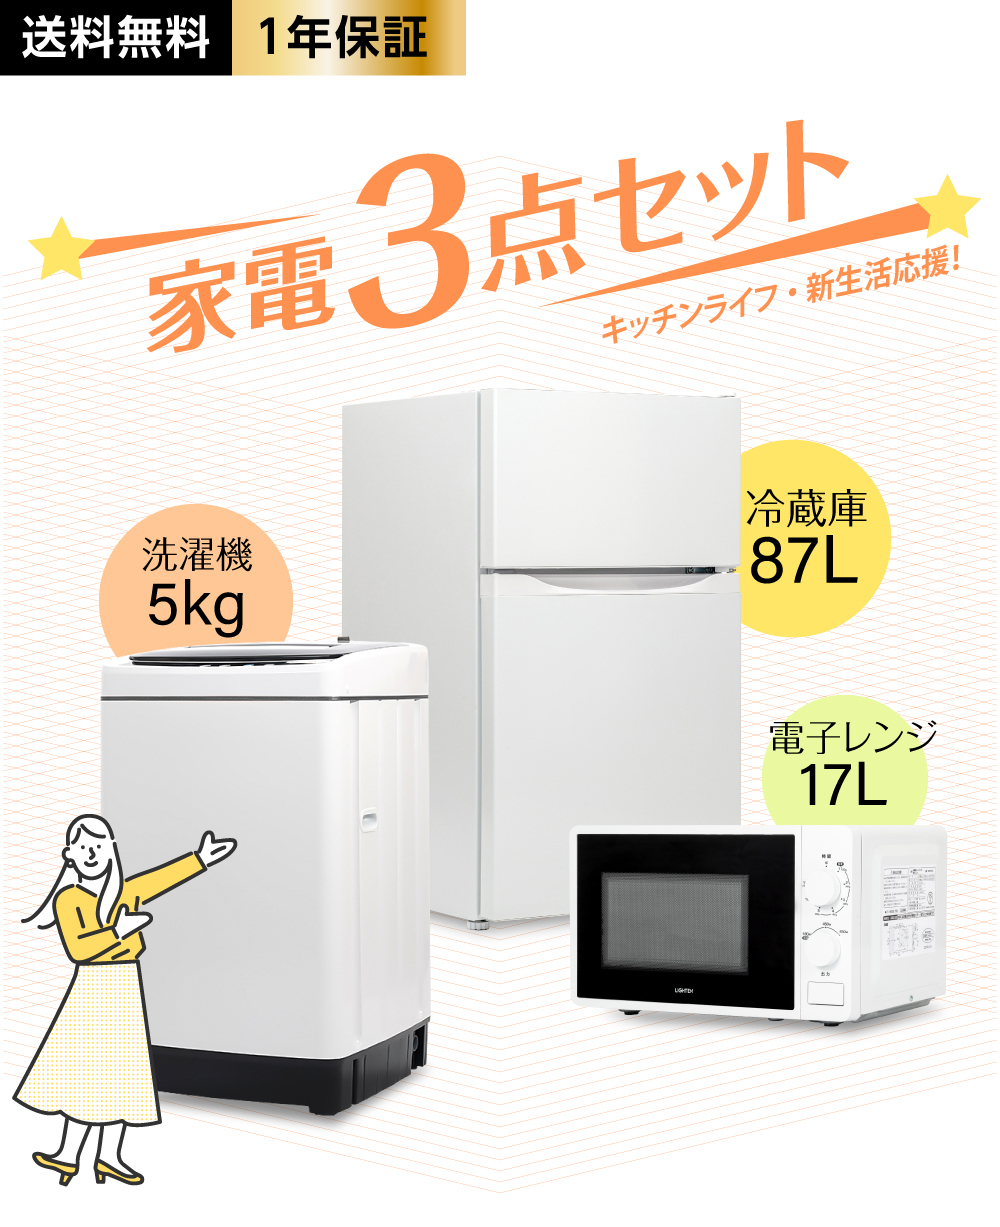 冷蔵庫 電子レンジ 洗濯機 新生活応援セット 家電3点セット 新生活